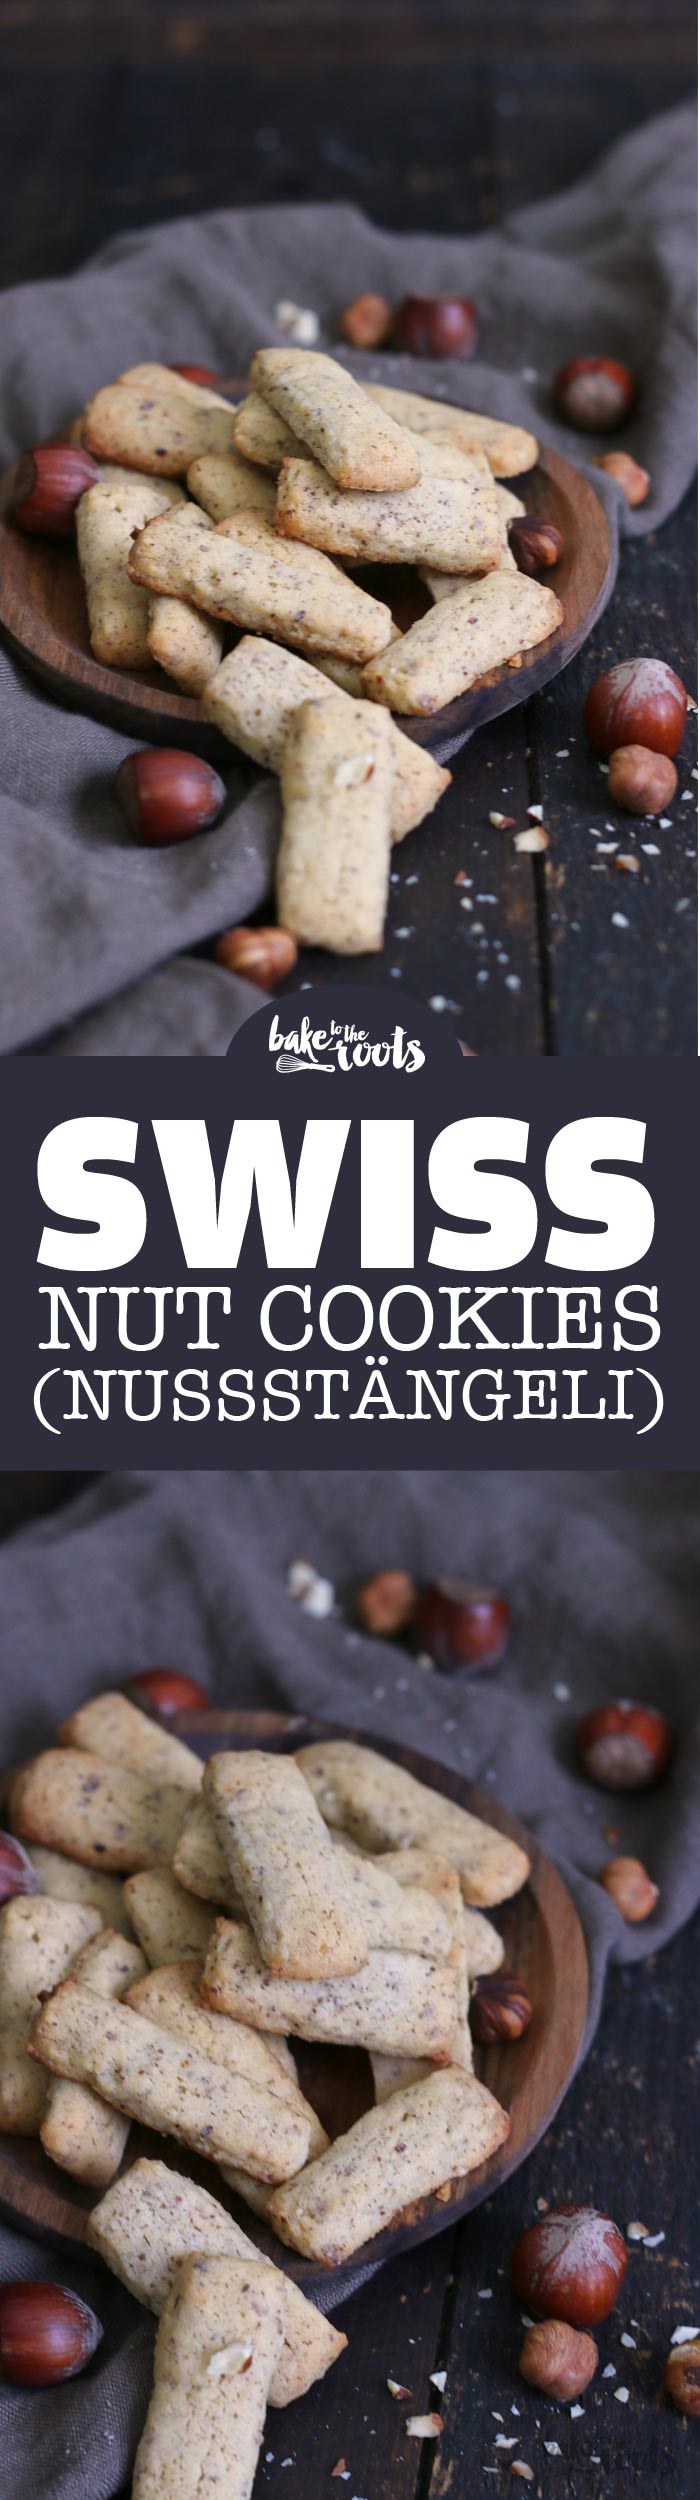 Leckere Schweizer Nussstängeli | Bake to the roots